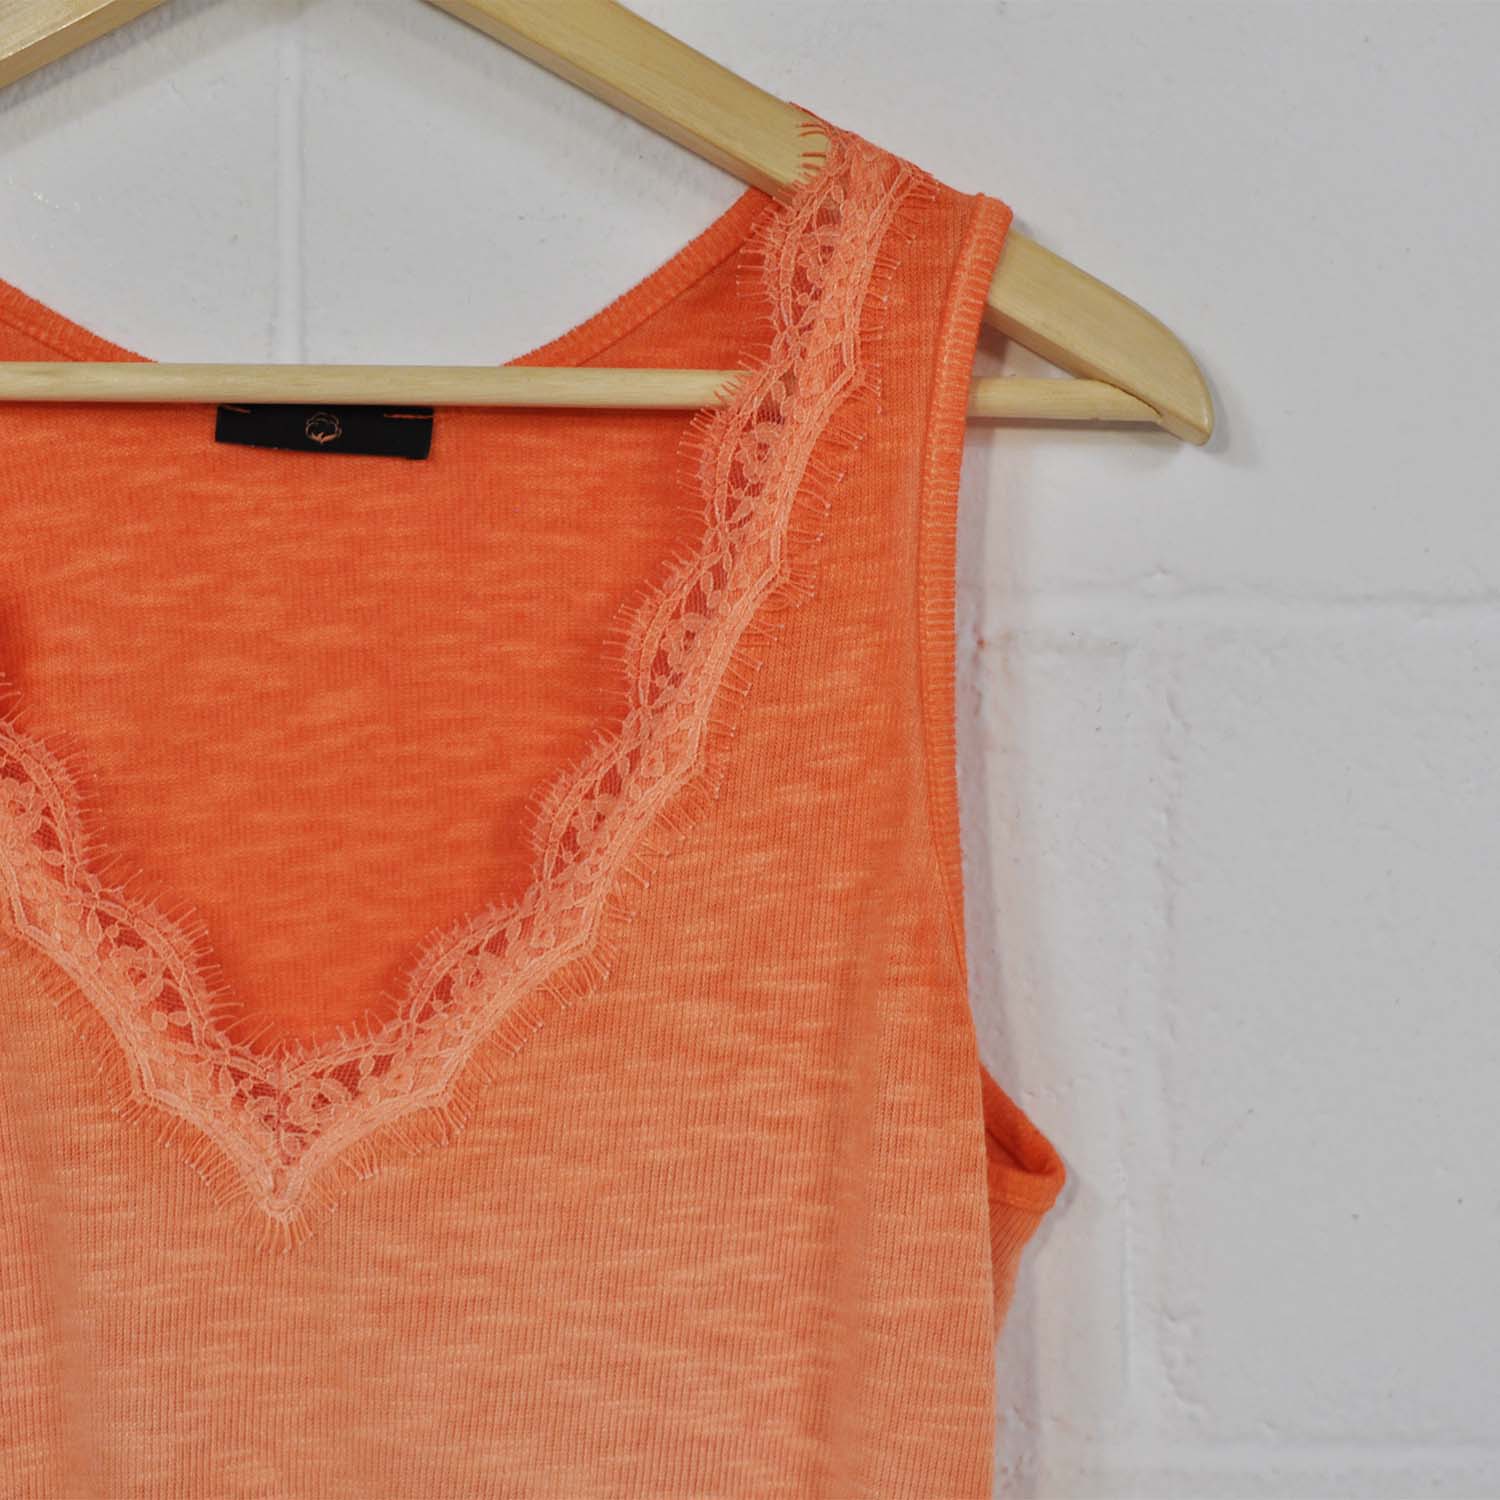 Margaret Mitchell Exponer Paraíso Camiseta tirantes lencera naranja – The Amisy Company